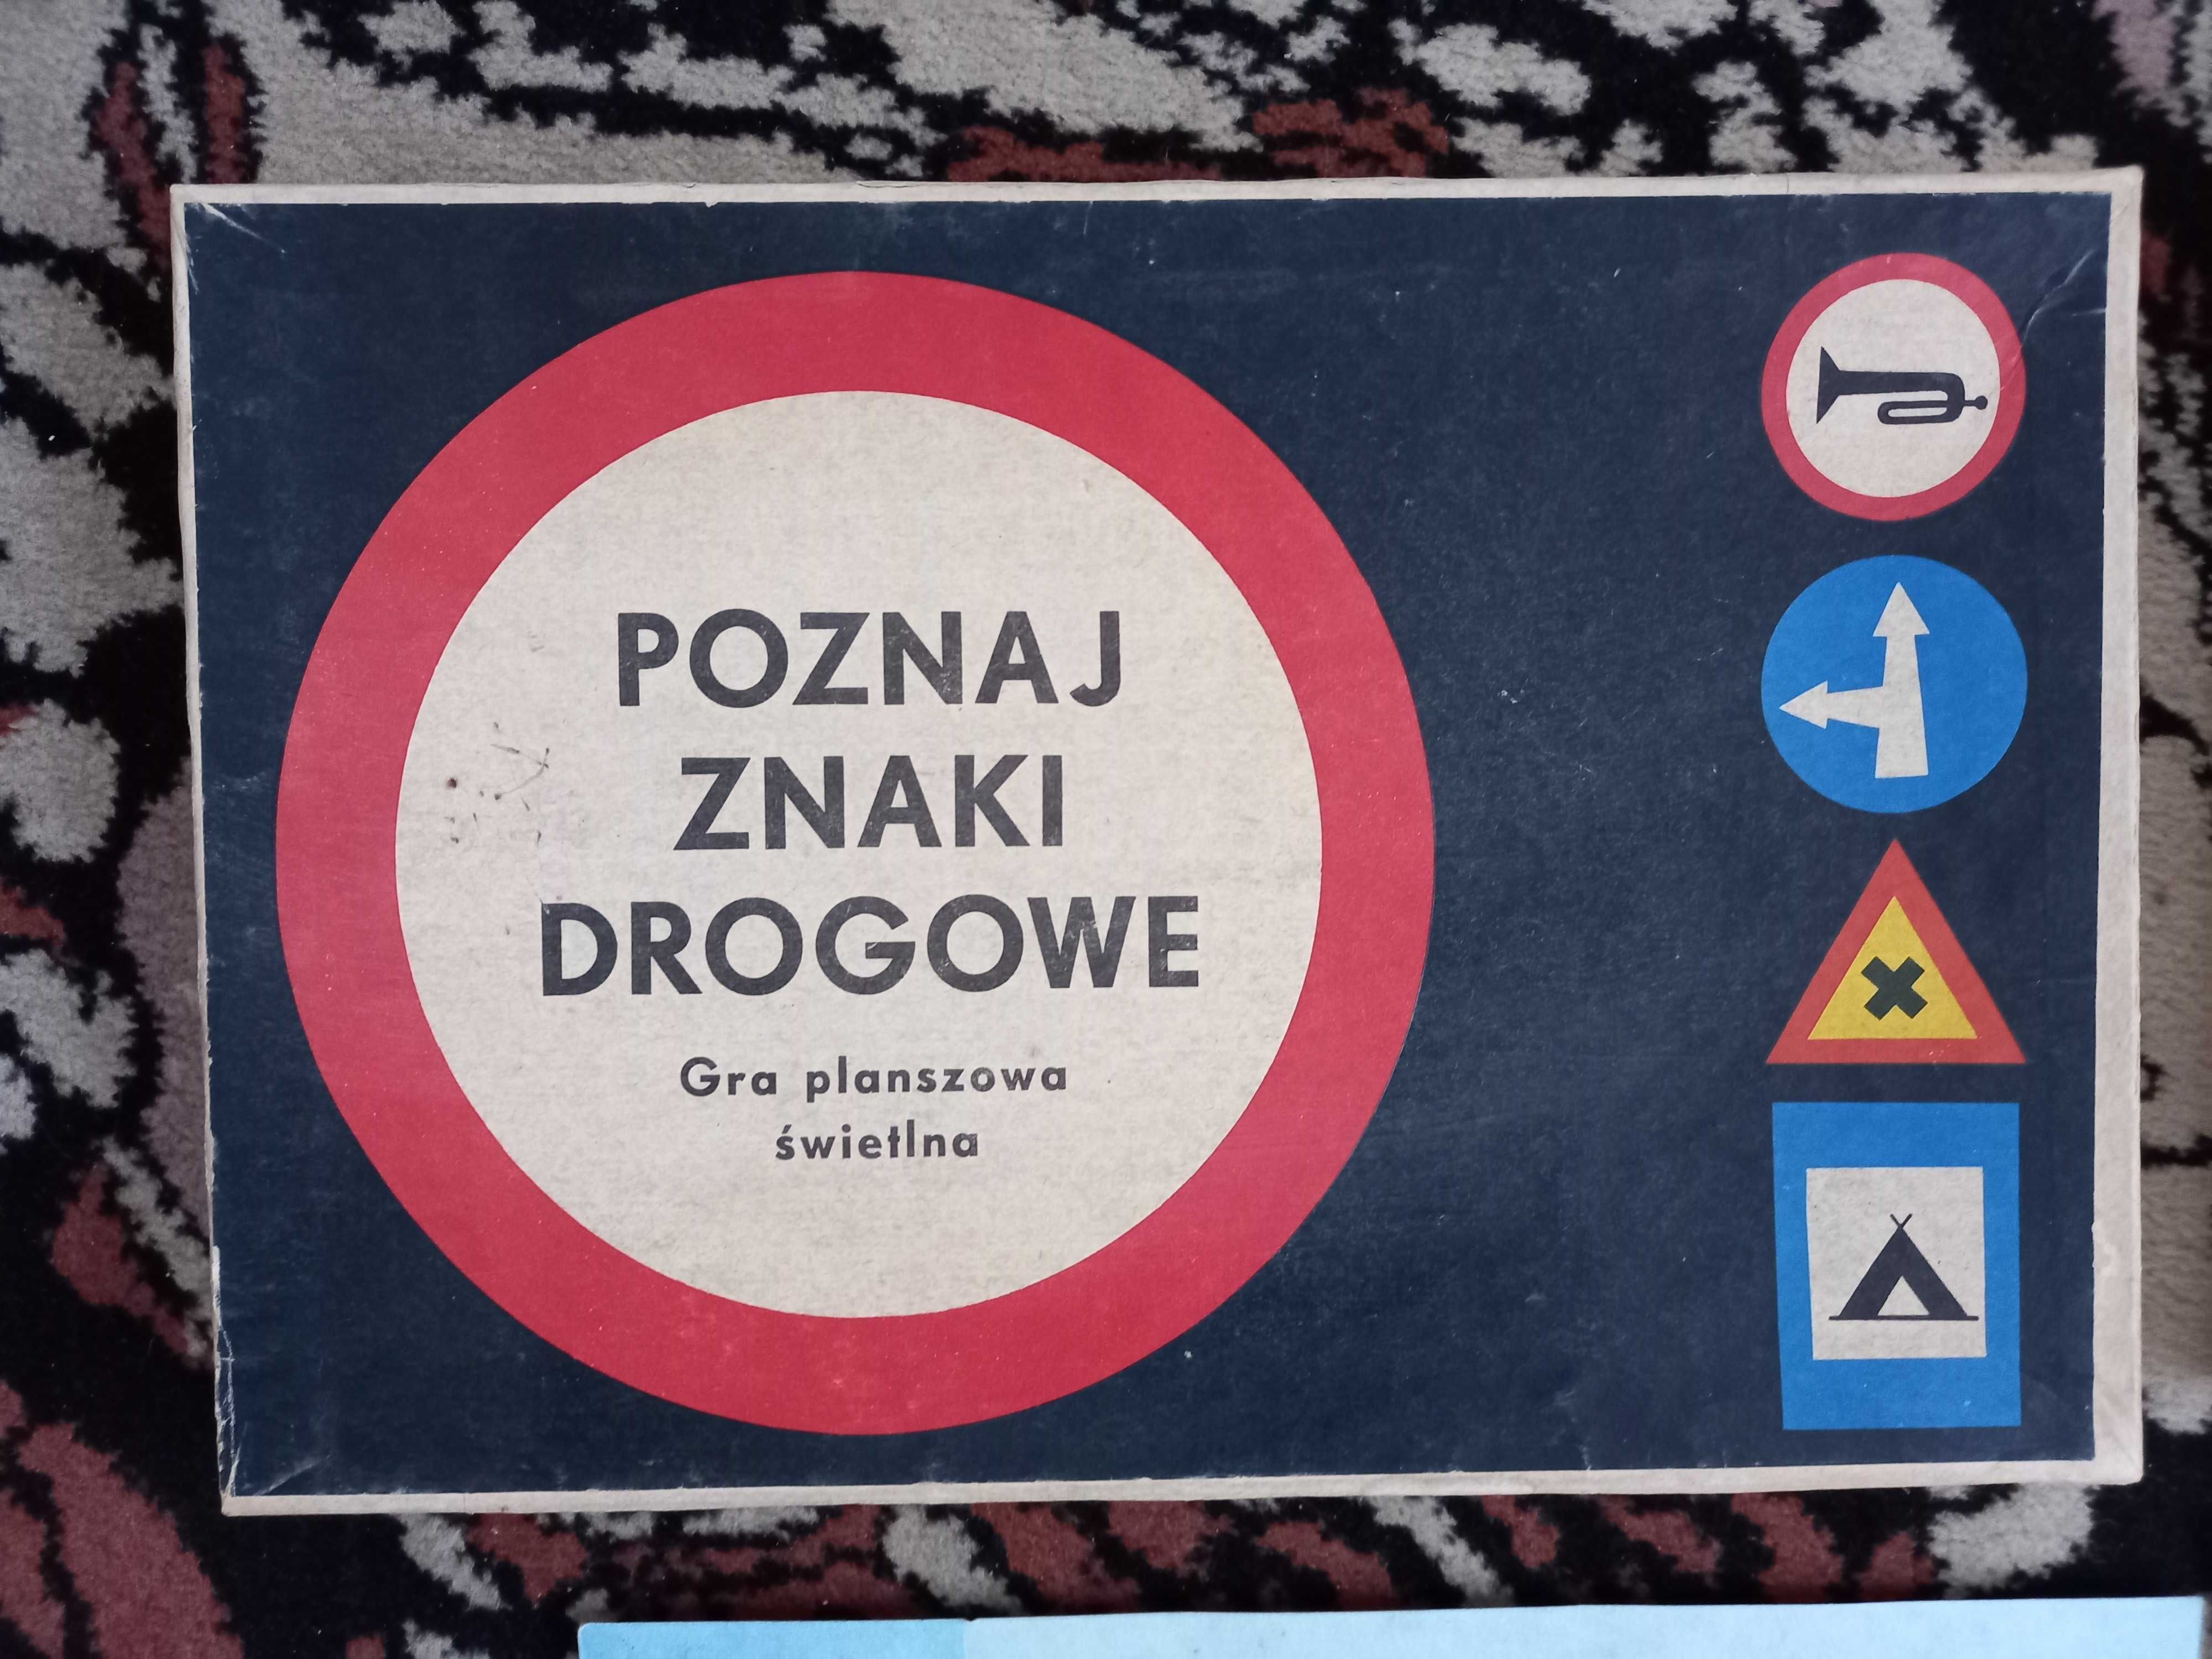 Retro gra z PRL "Poznaj znaki drogowe" gra planszowa świetlna